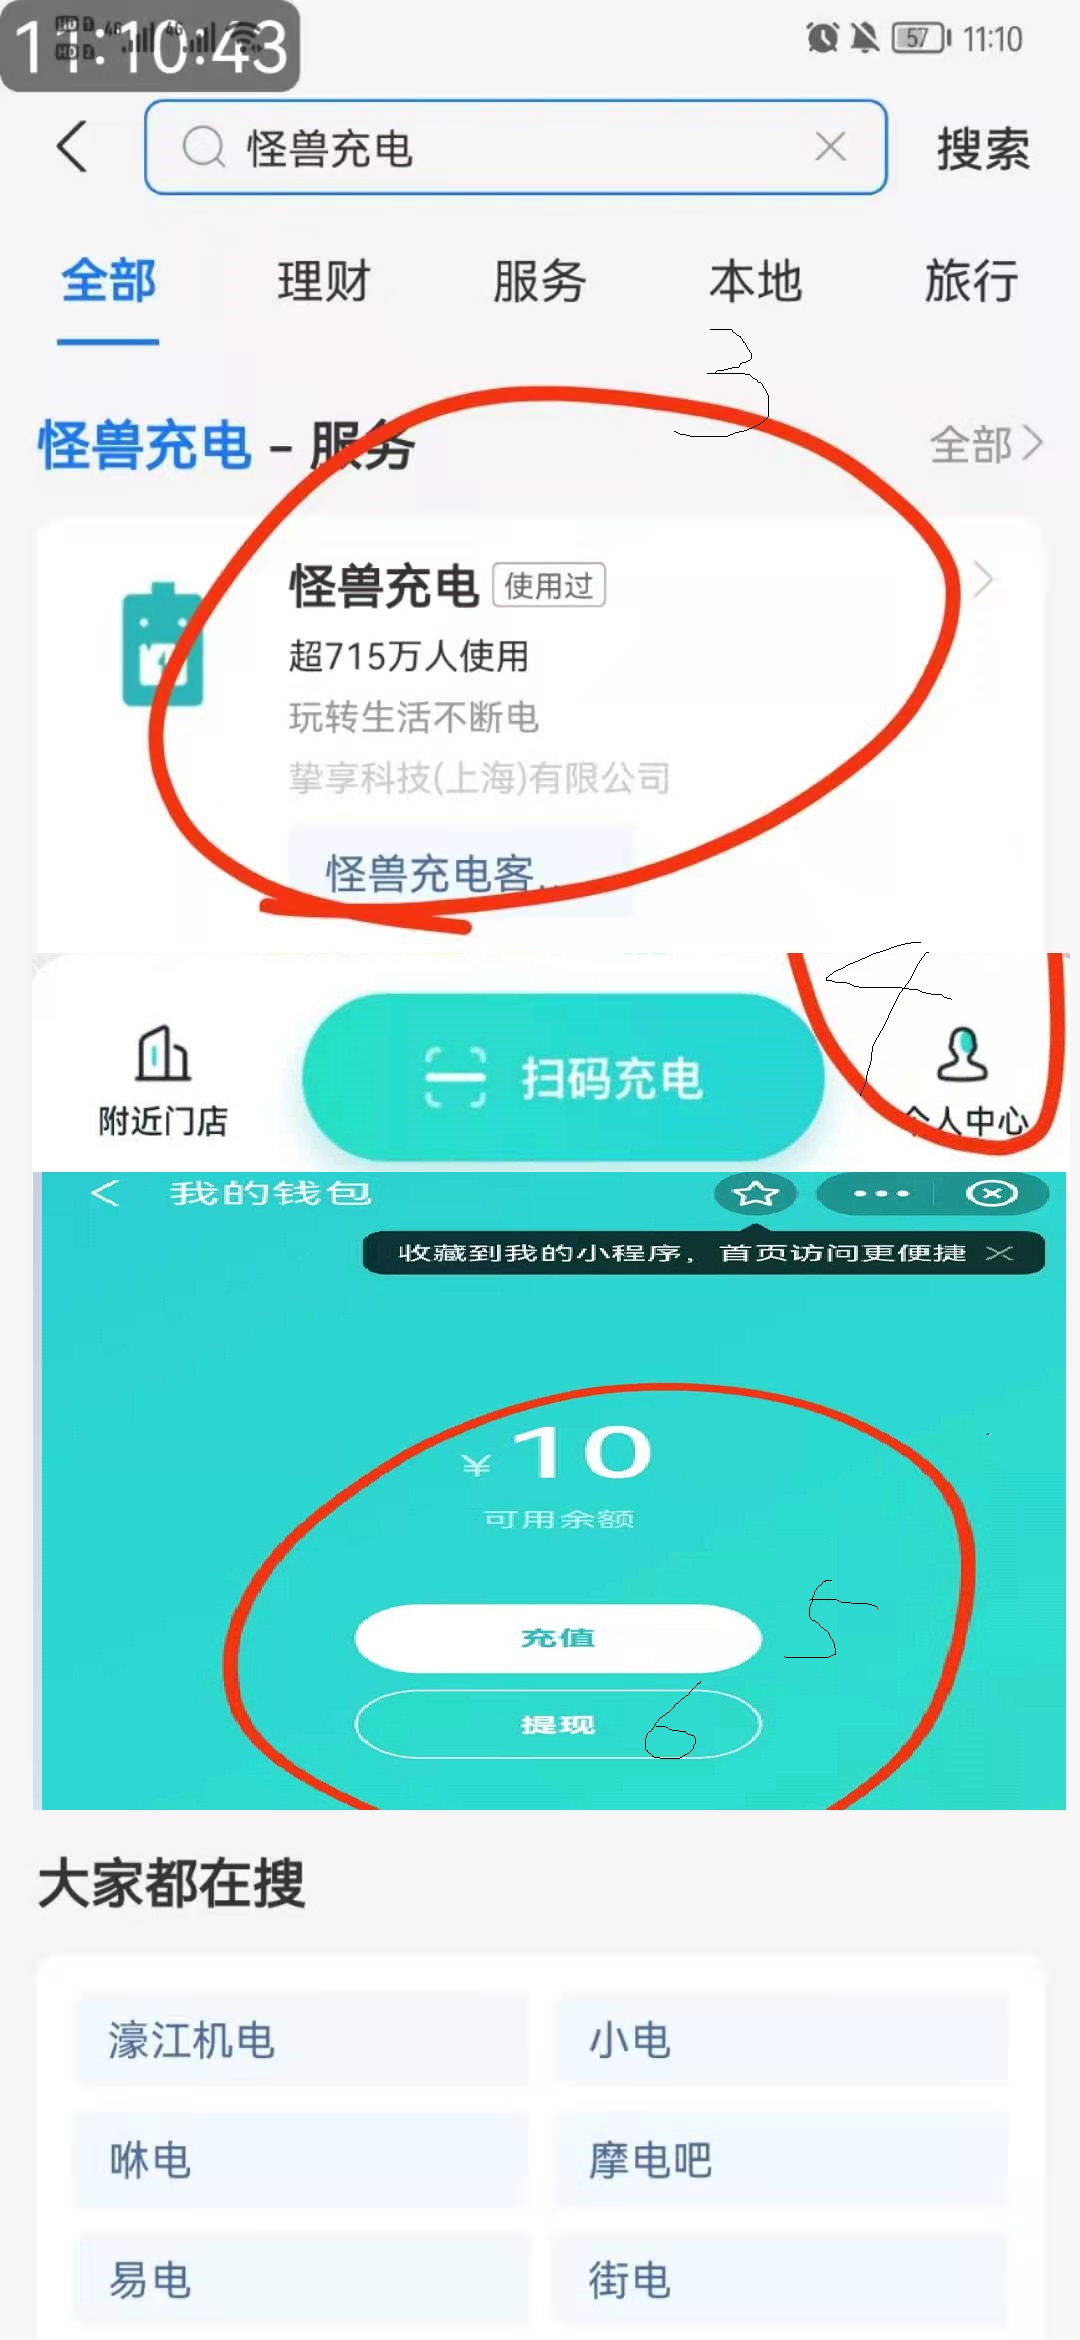 河南省zfb6元充电活动图片说明（非首发-只做图片说明）-惠小助(52huixz.com)